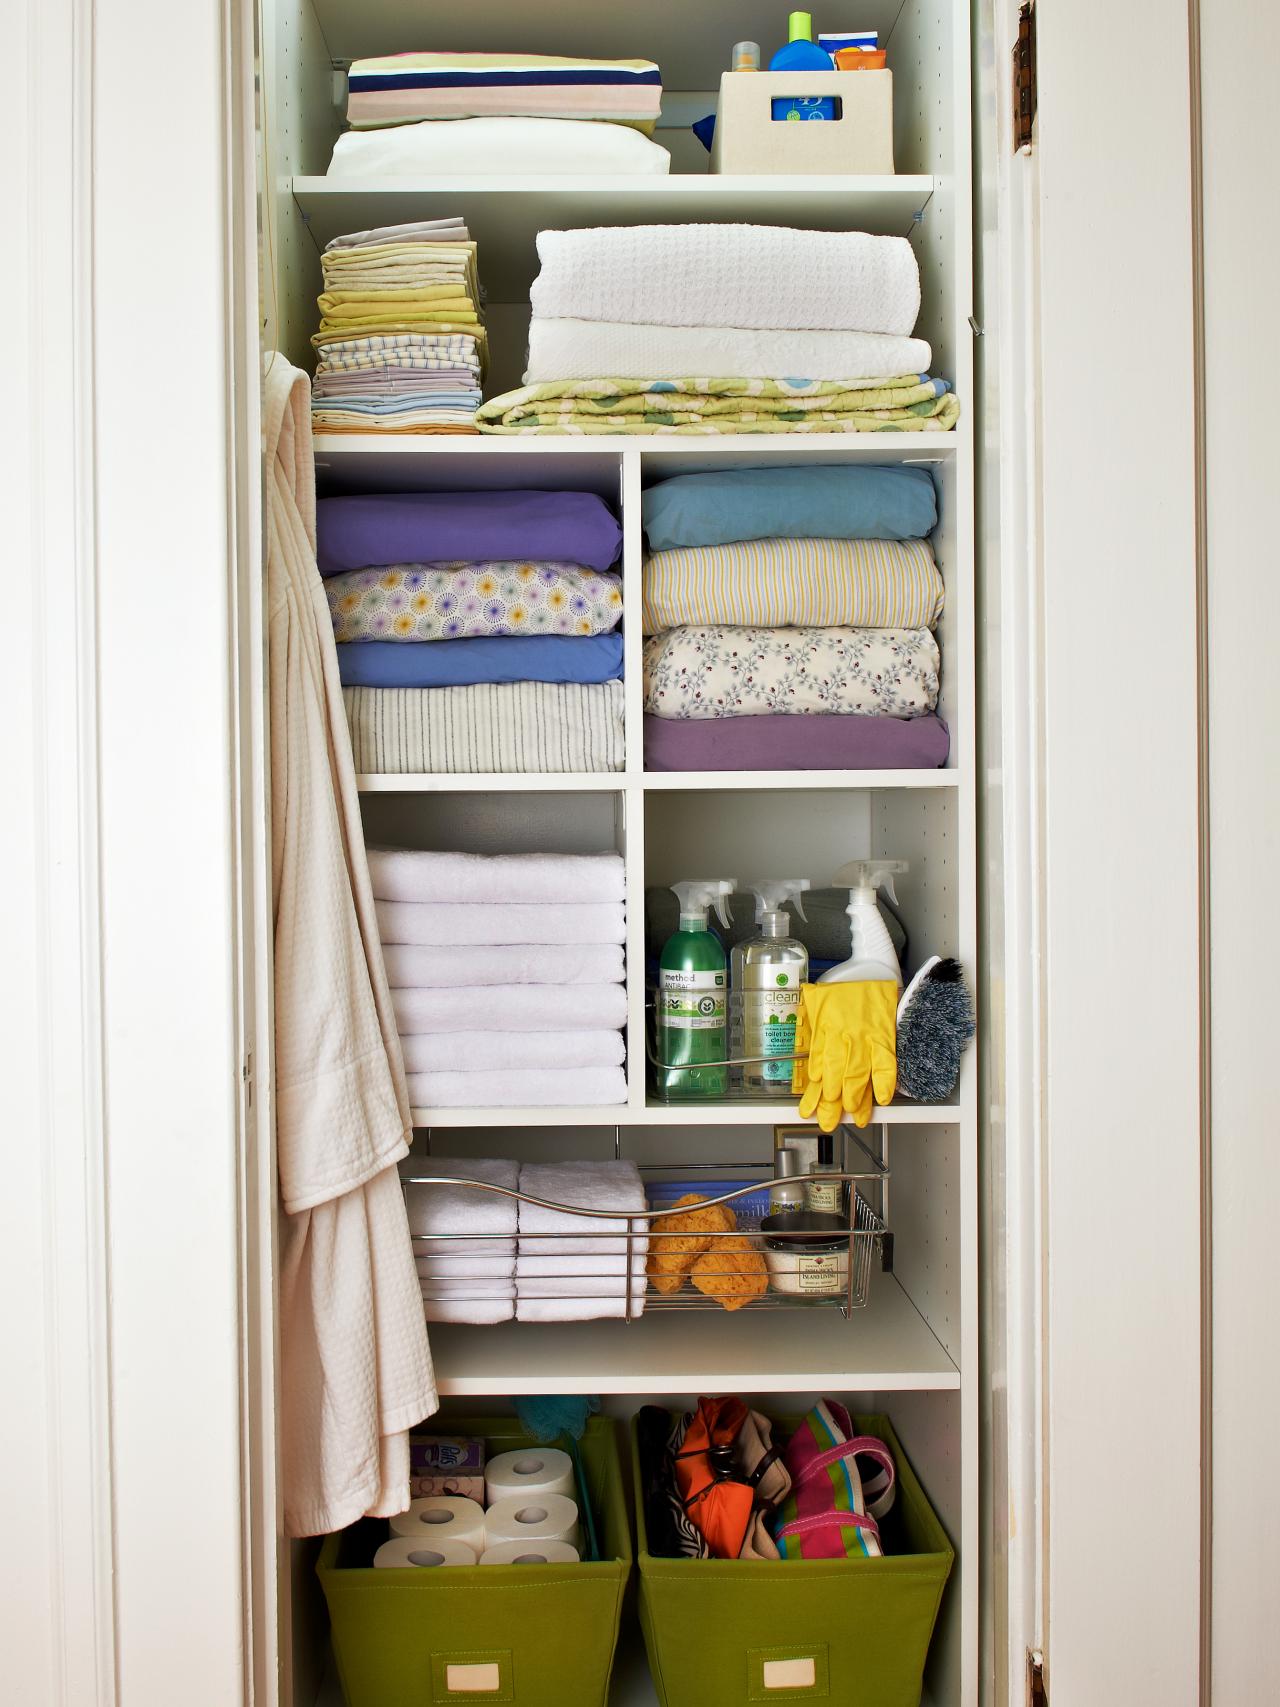 Case Study: An Efficient Linen Closet